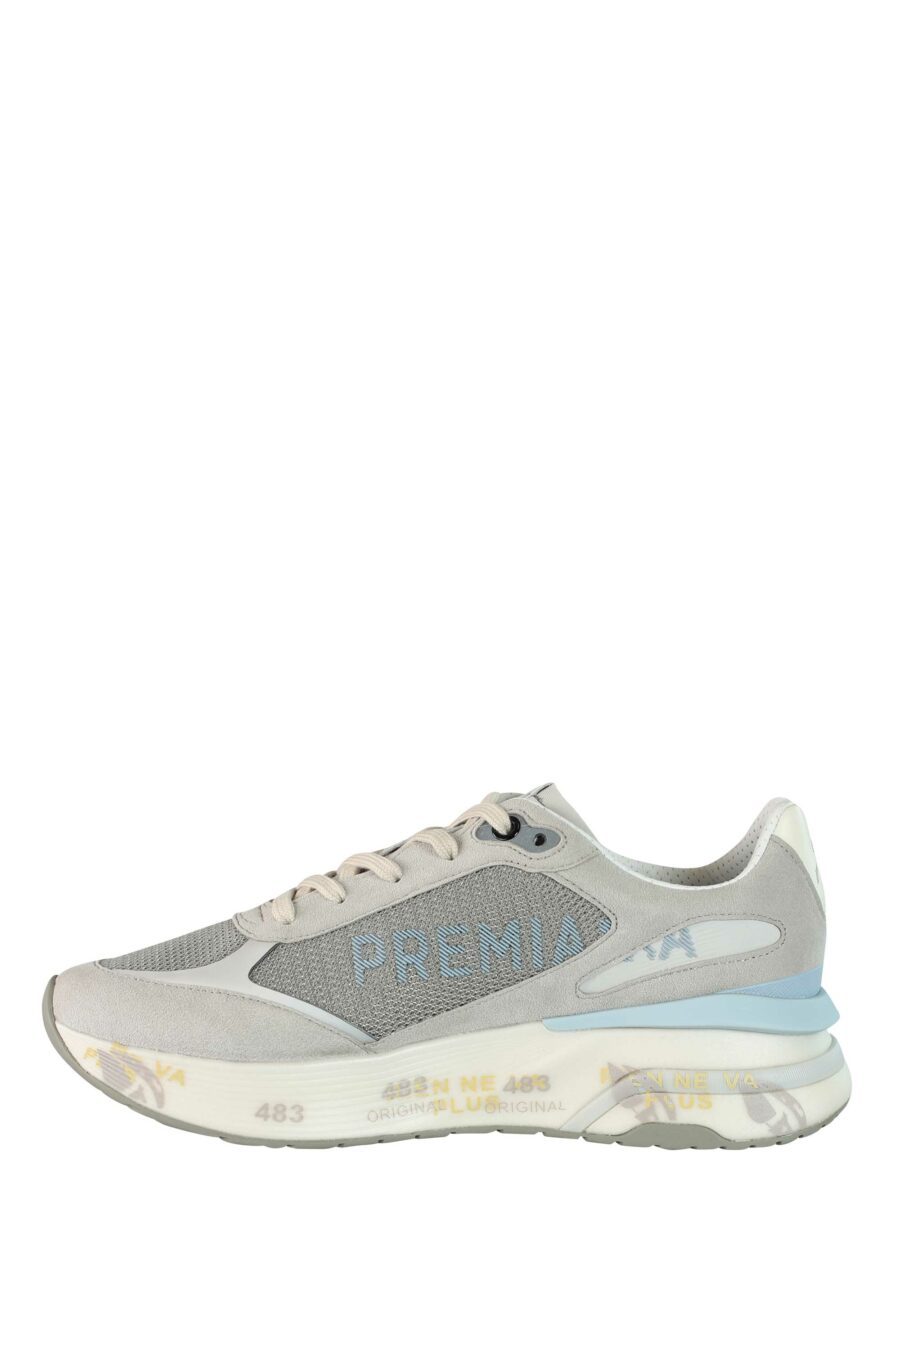 Zapatillas grises con azul cielo "moe run 6333" - 8058326252810 3